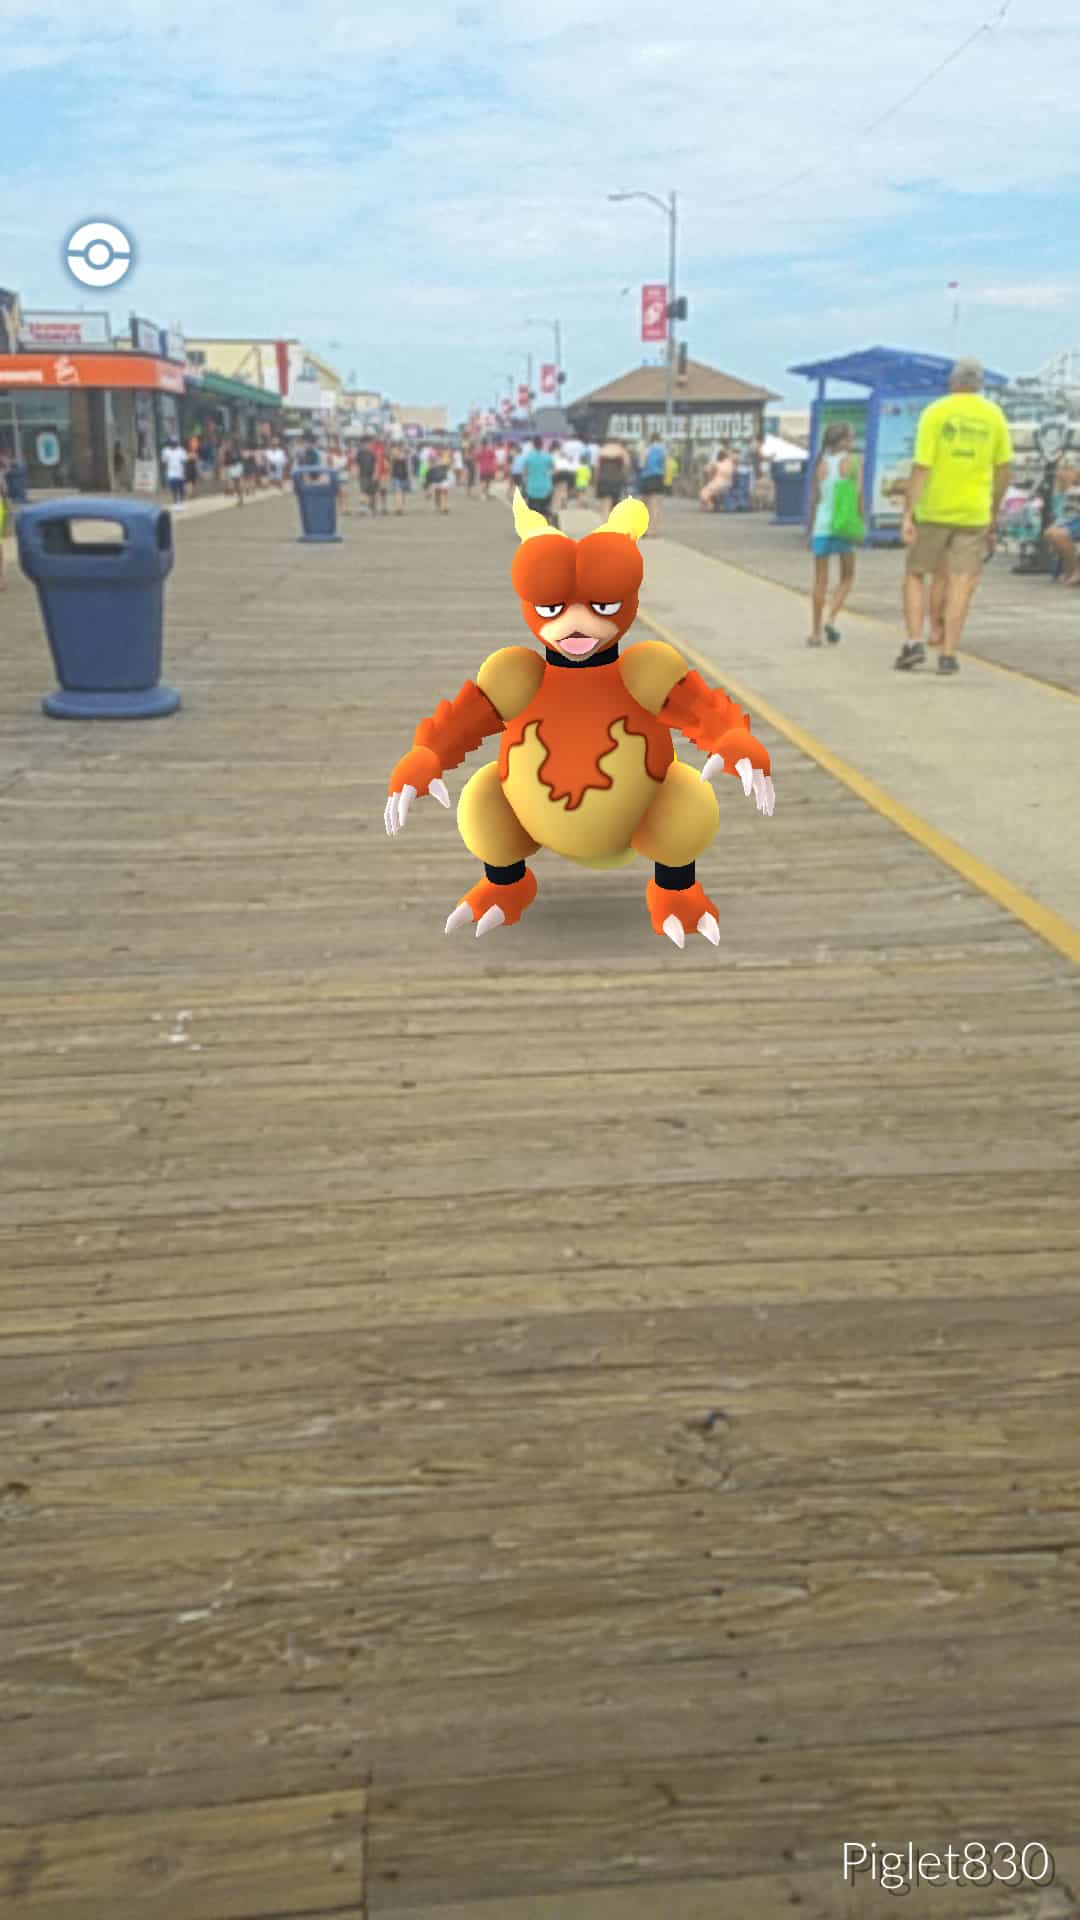 A screenshot of a Pokémon GO character standing on a boardwalk.